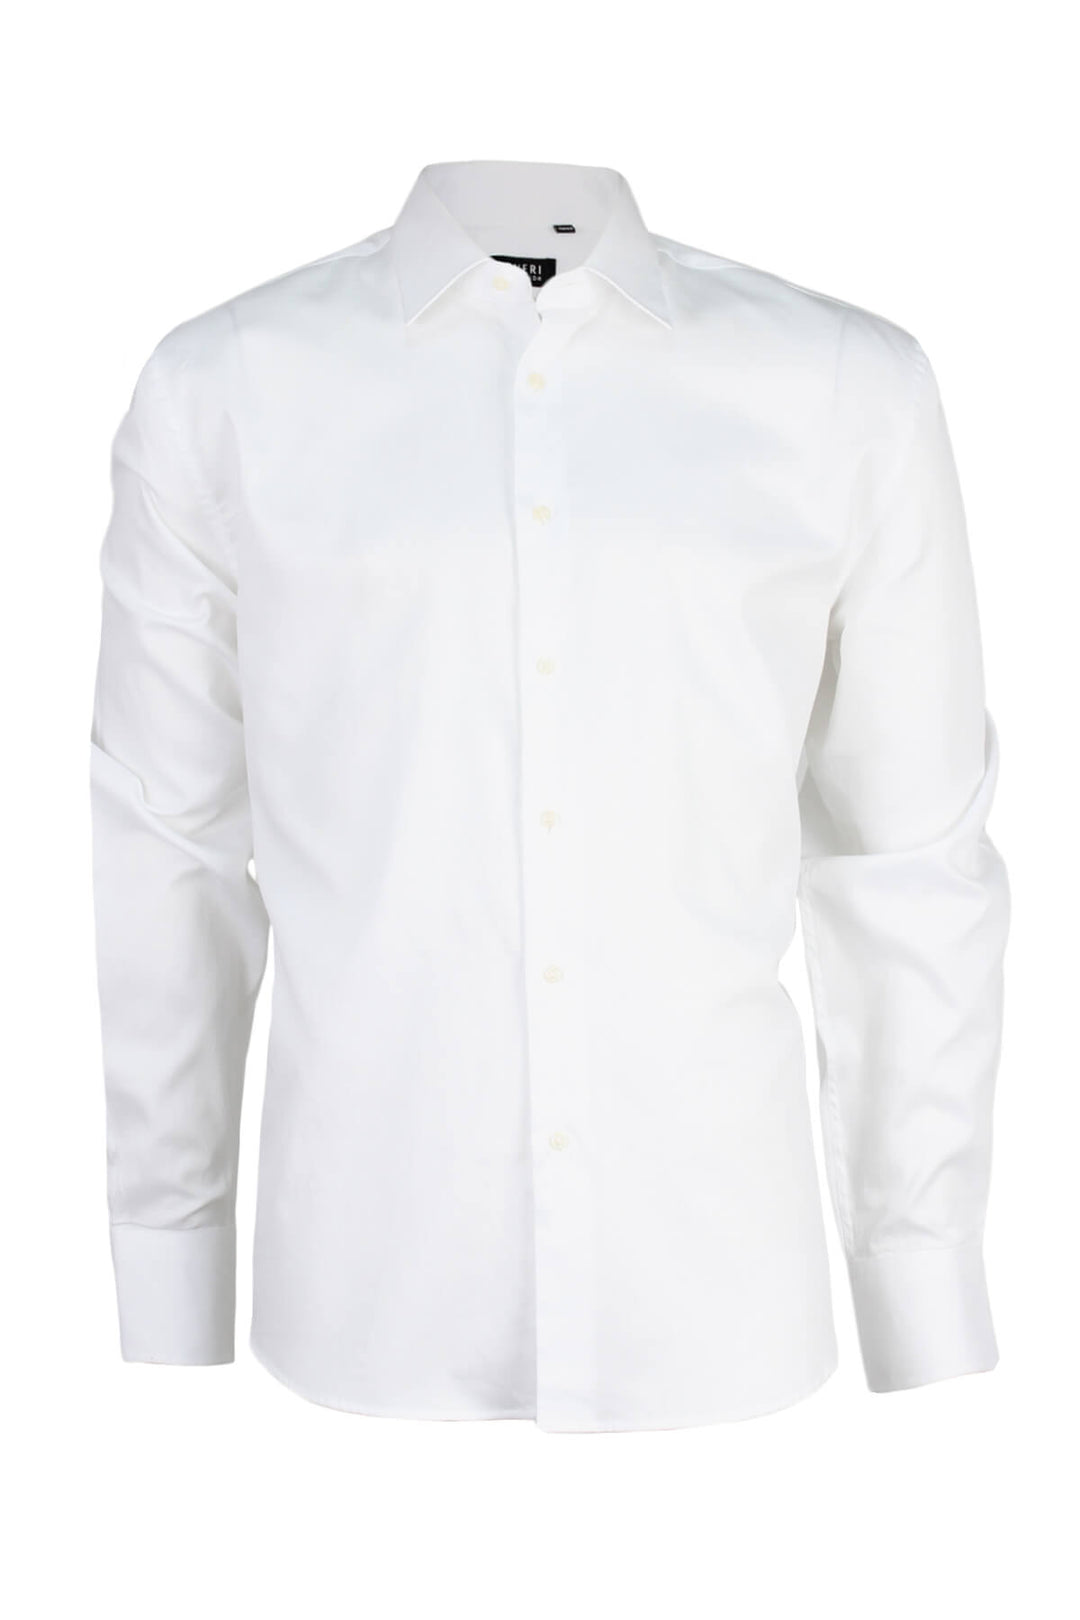 Camicia bianca uomo in cotone operato spigato